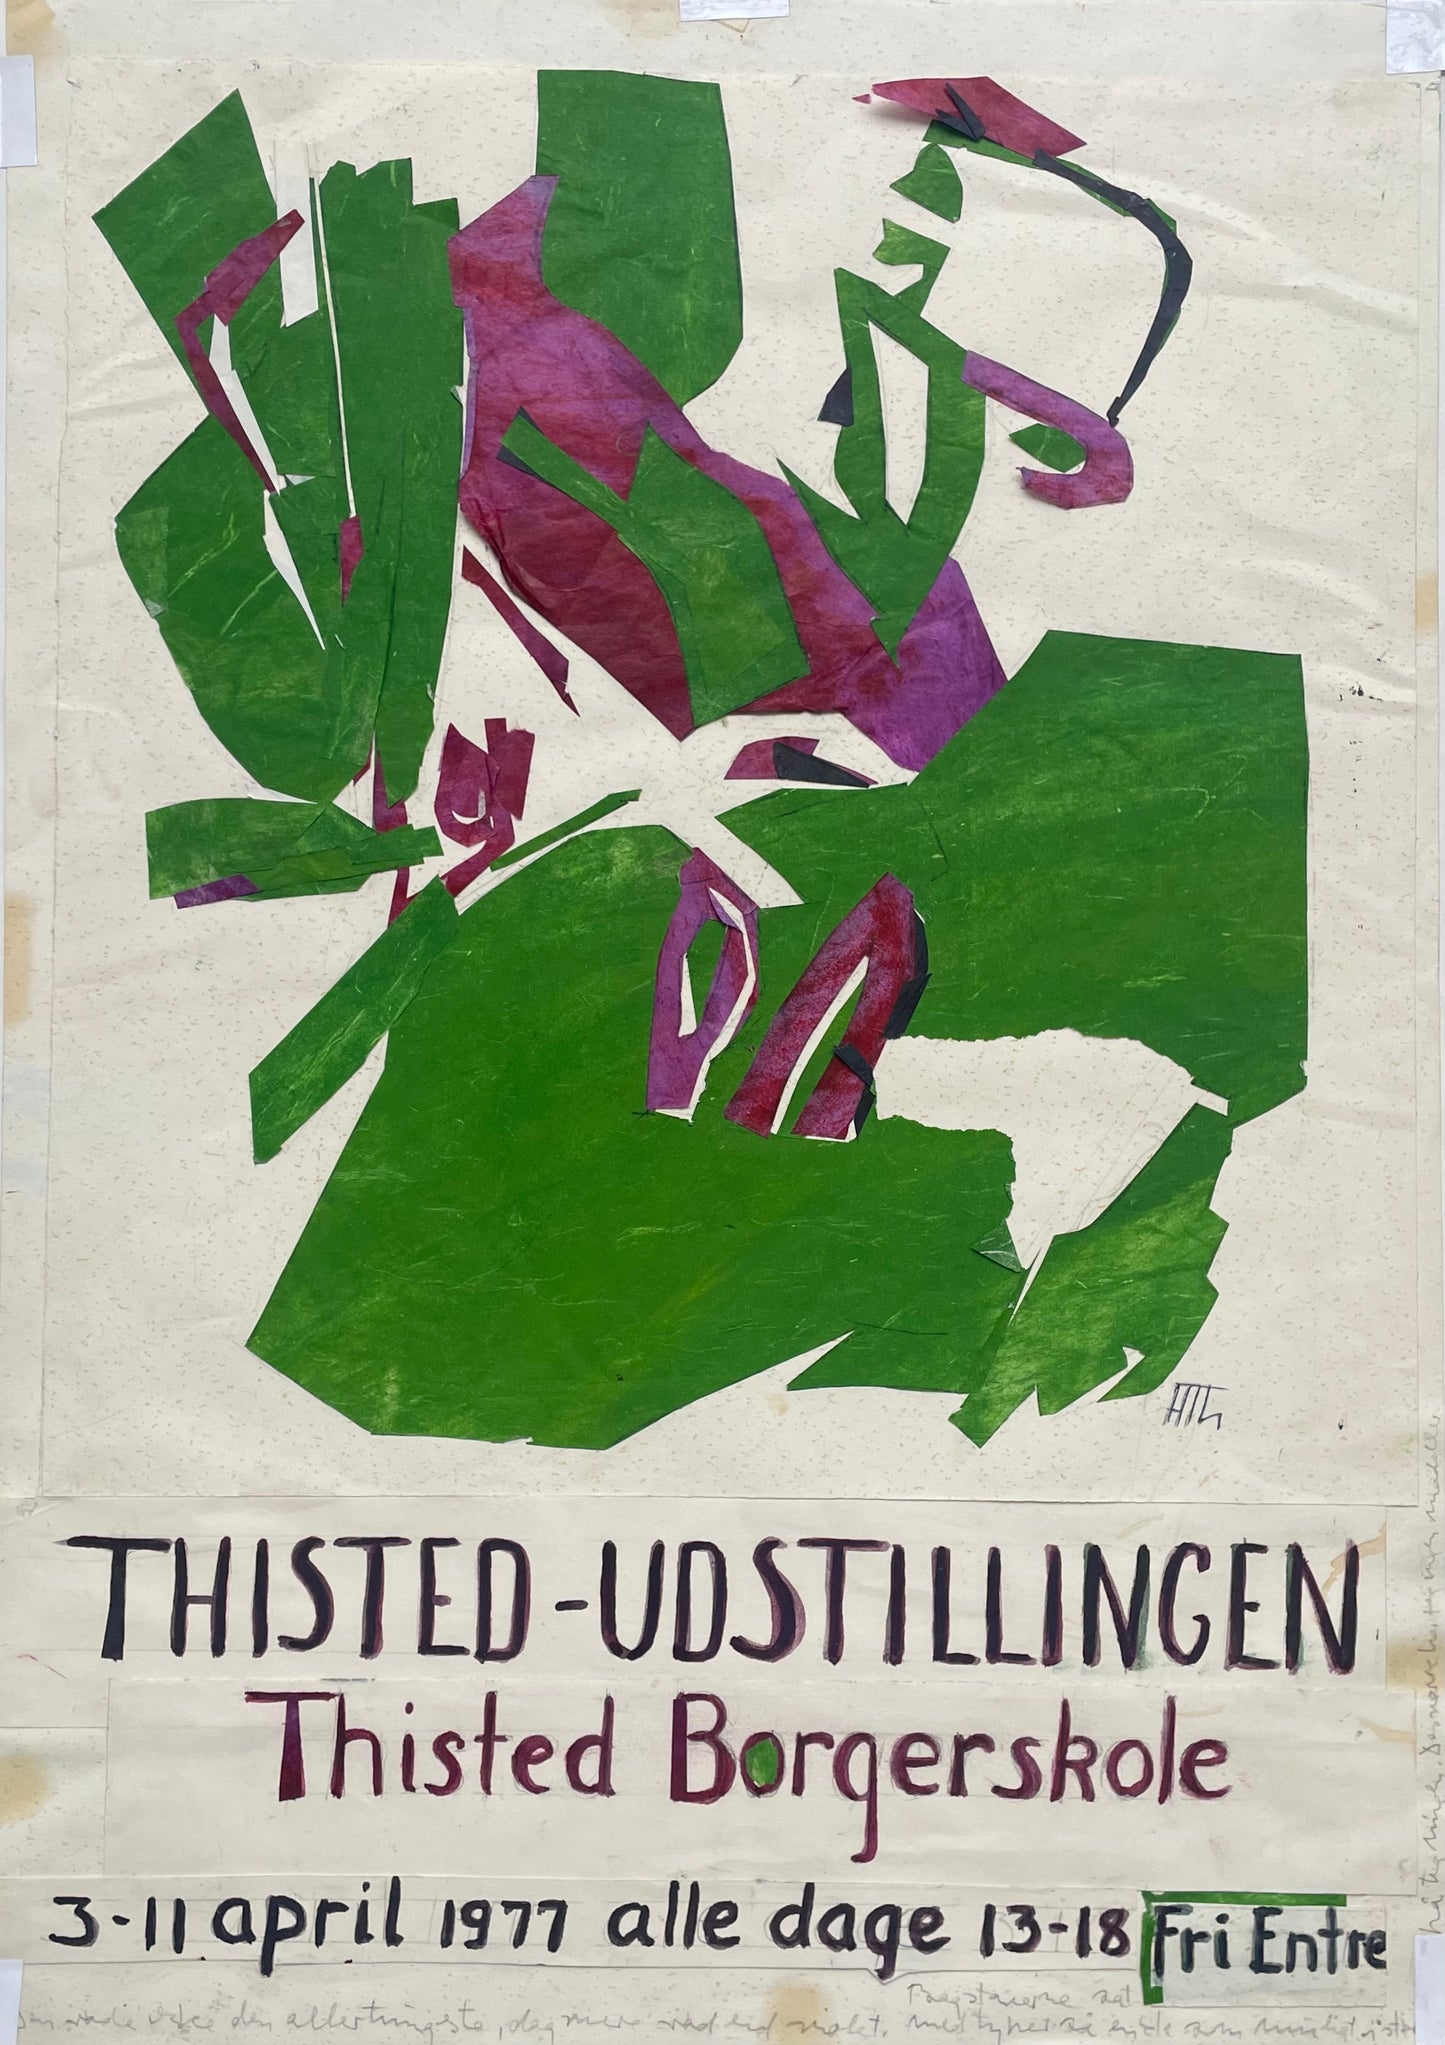 Helle Thorborg, "Thisted-Udstillingen", 1977